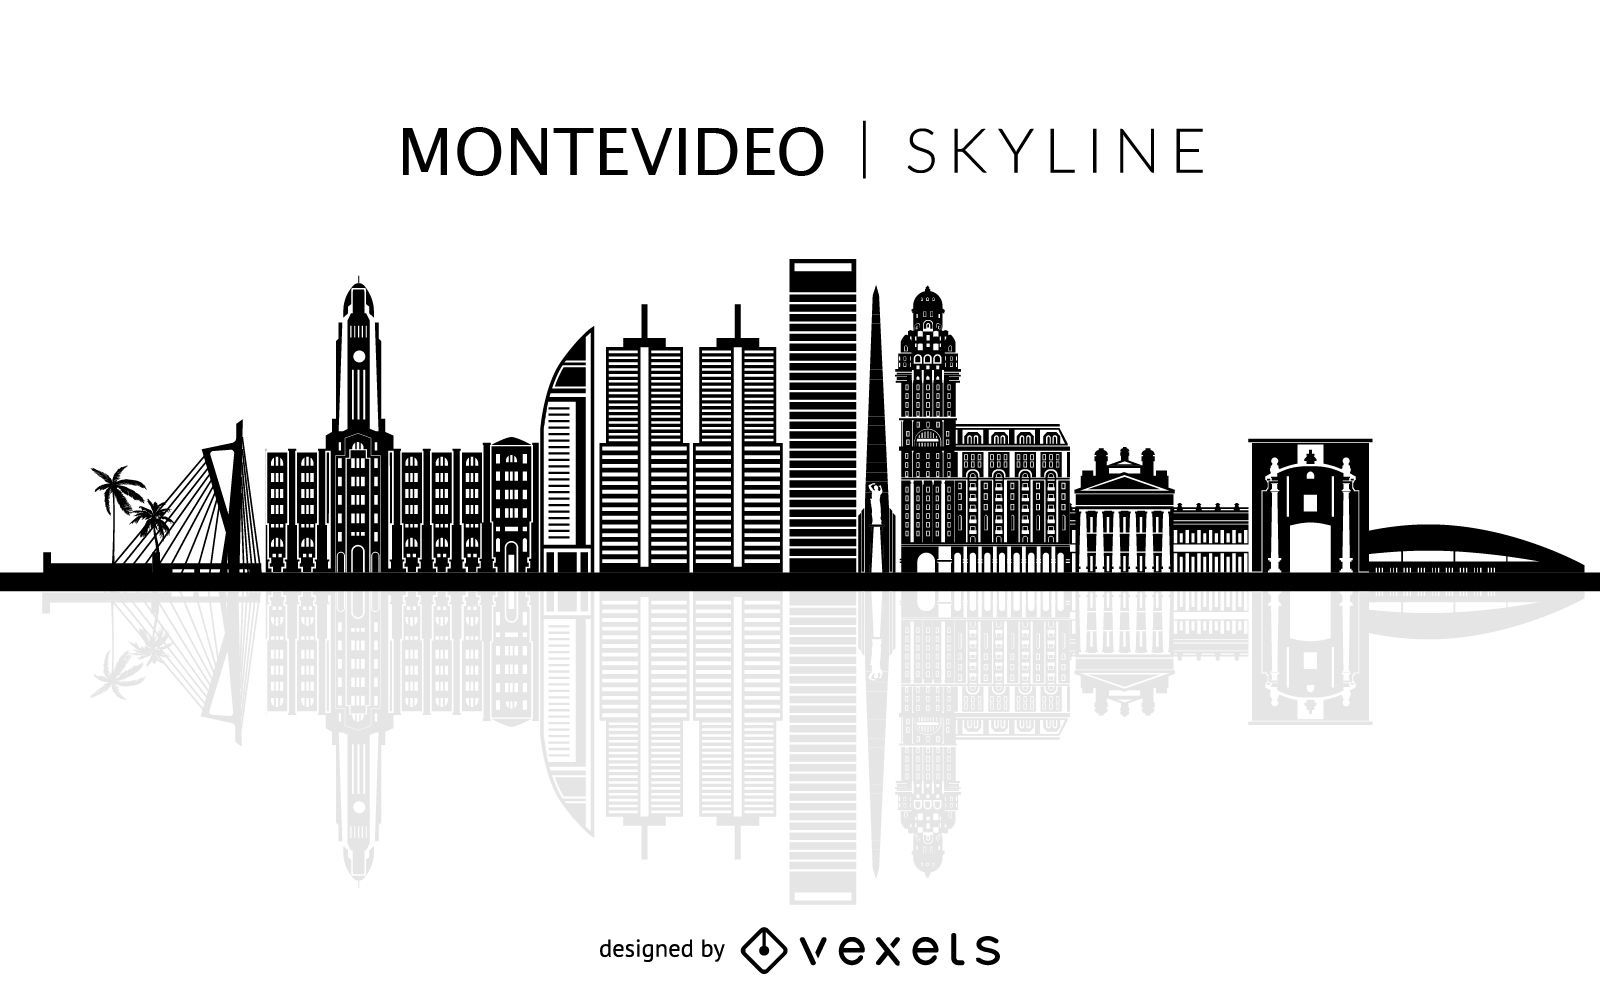 Skyline-Silhouette der Stadt Montevideo